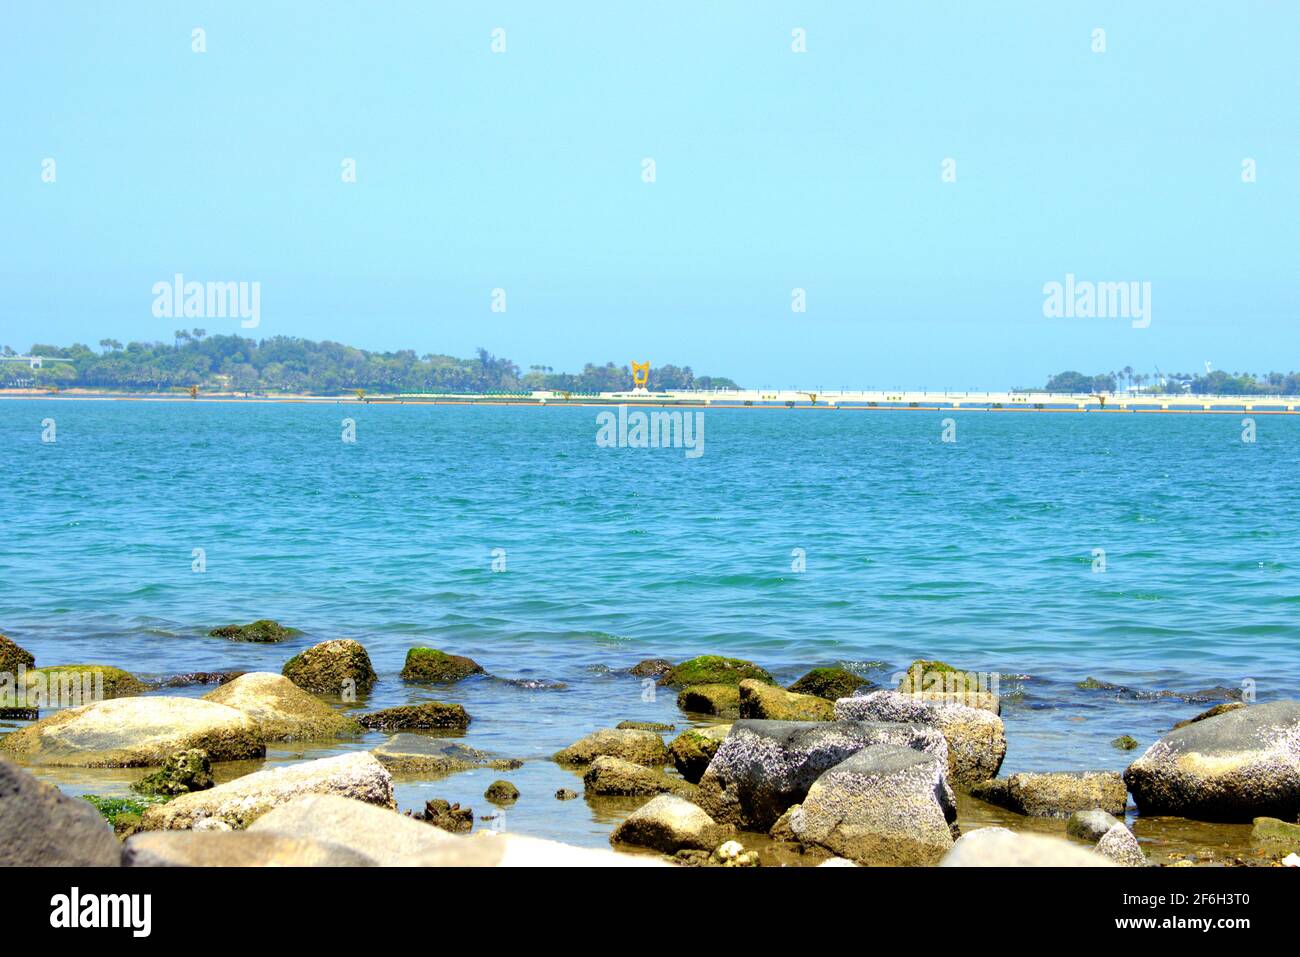 obhur jeddah beach Stock Photo